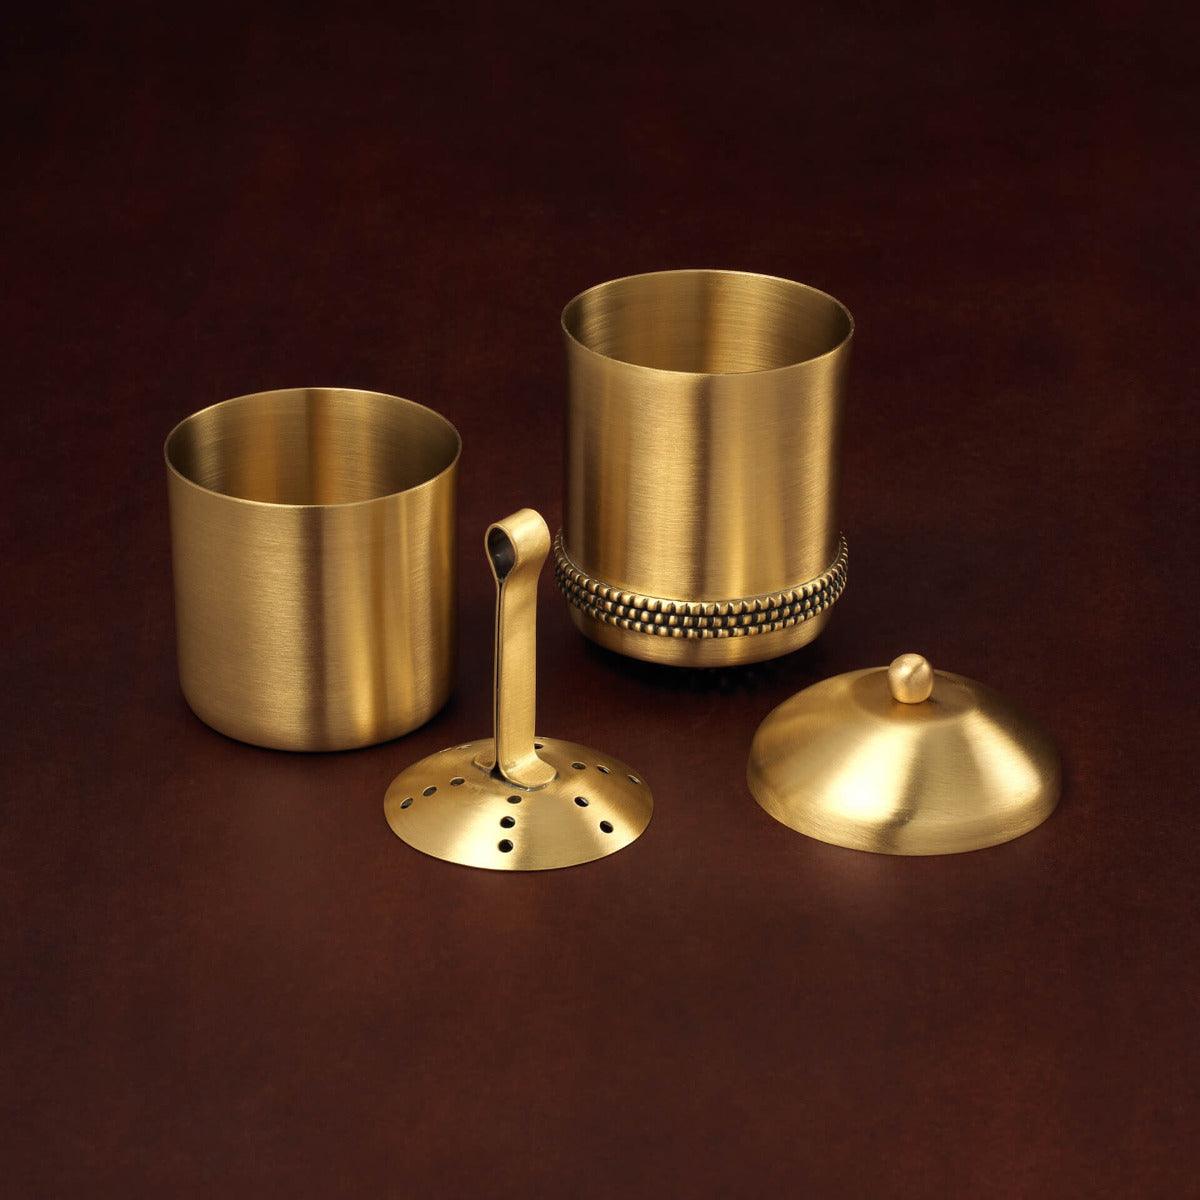 masai brass coffee filter gold